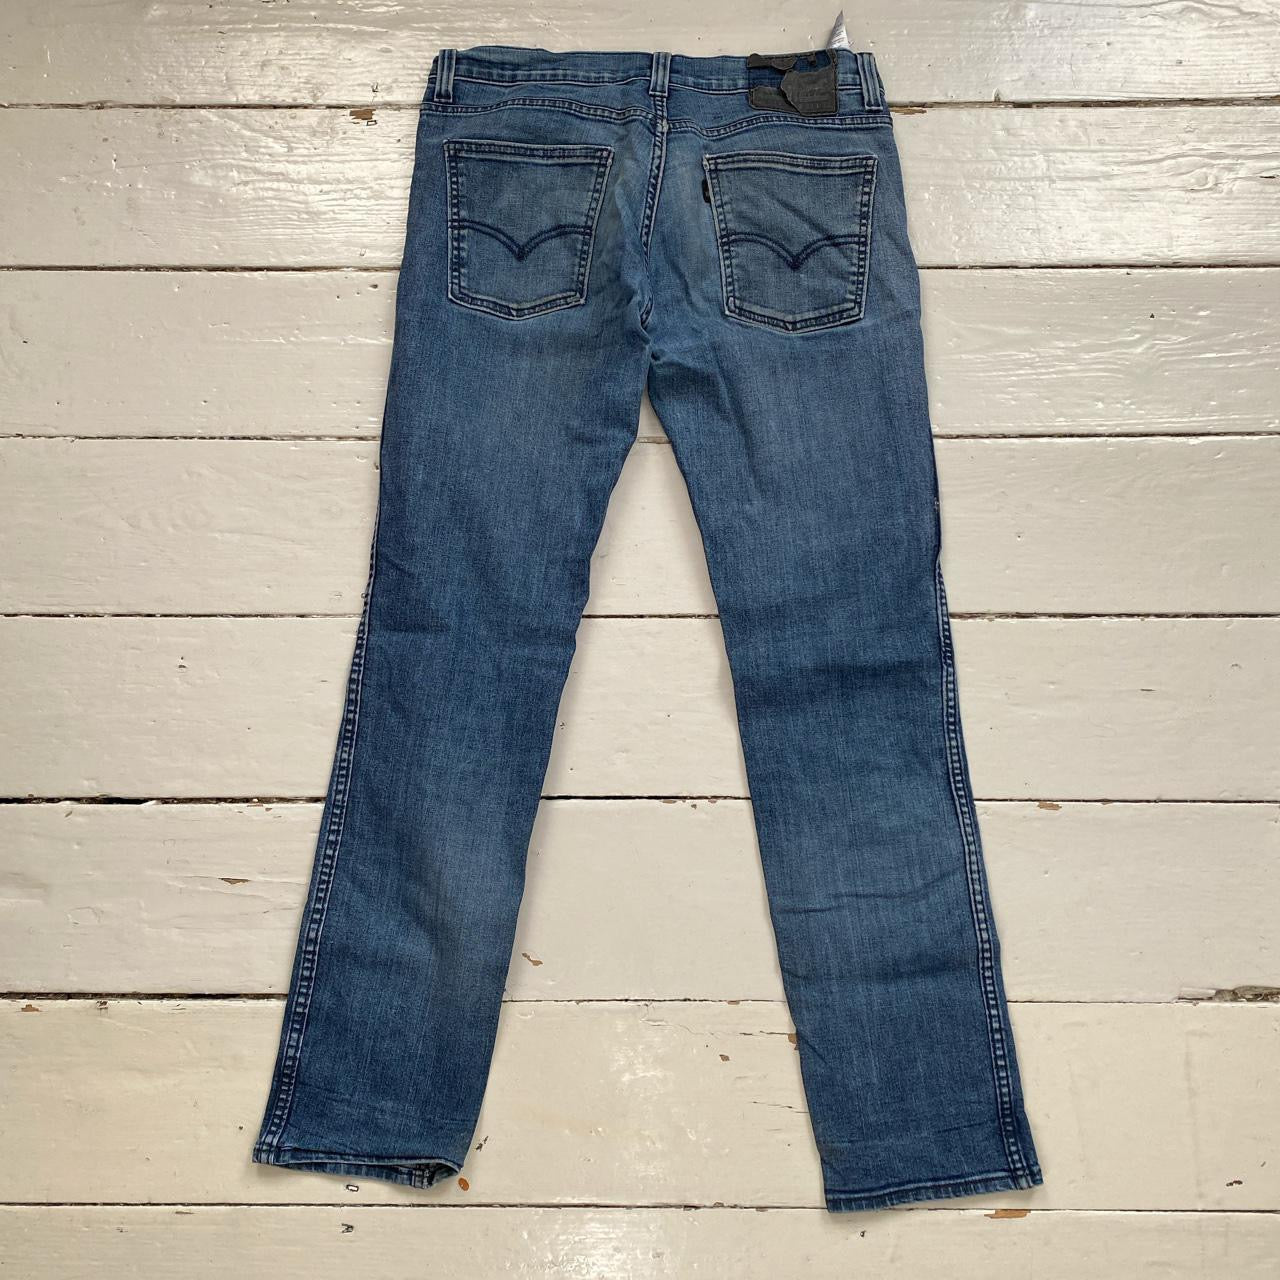 Levis 511 Slim Fit Jeans (30/30)